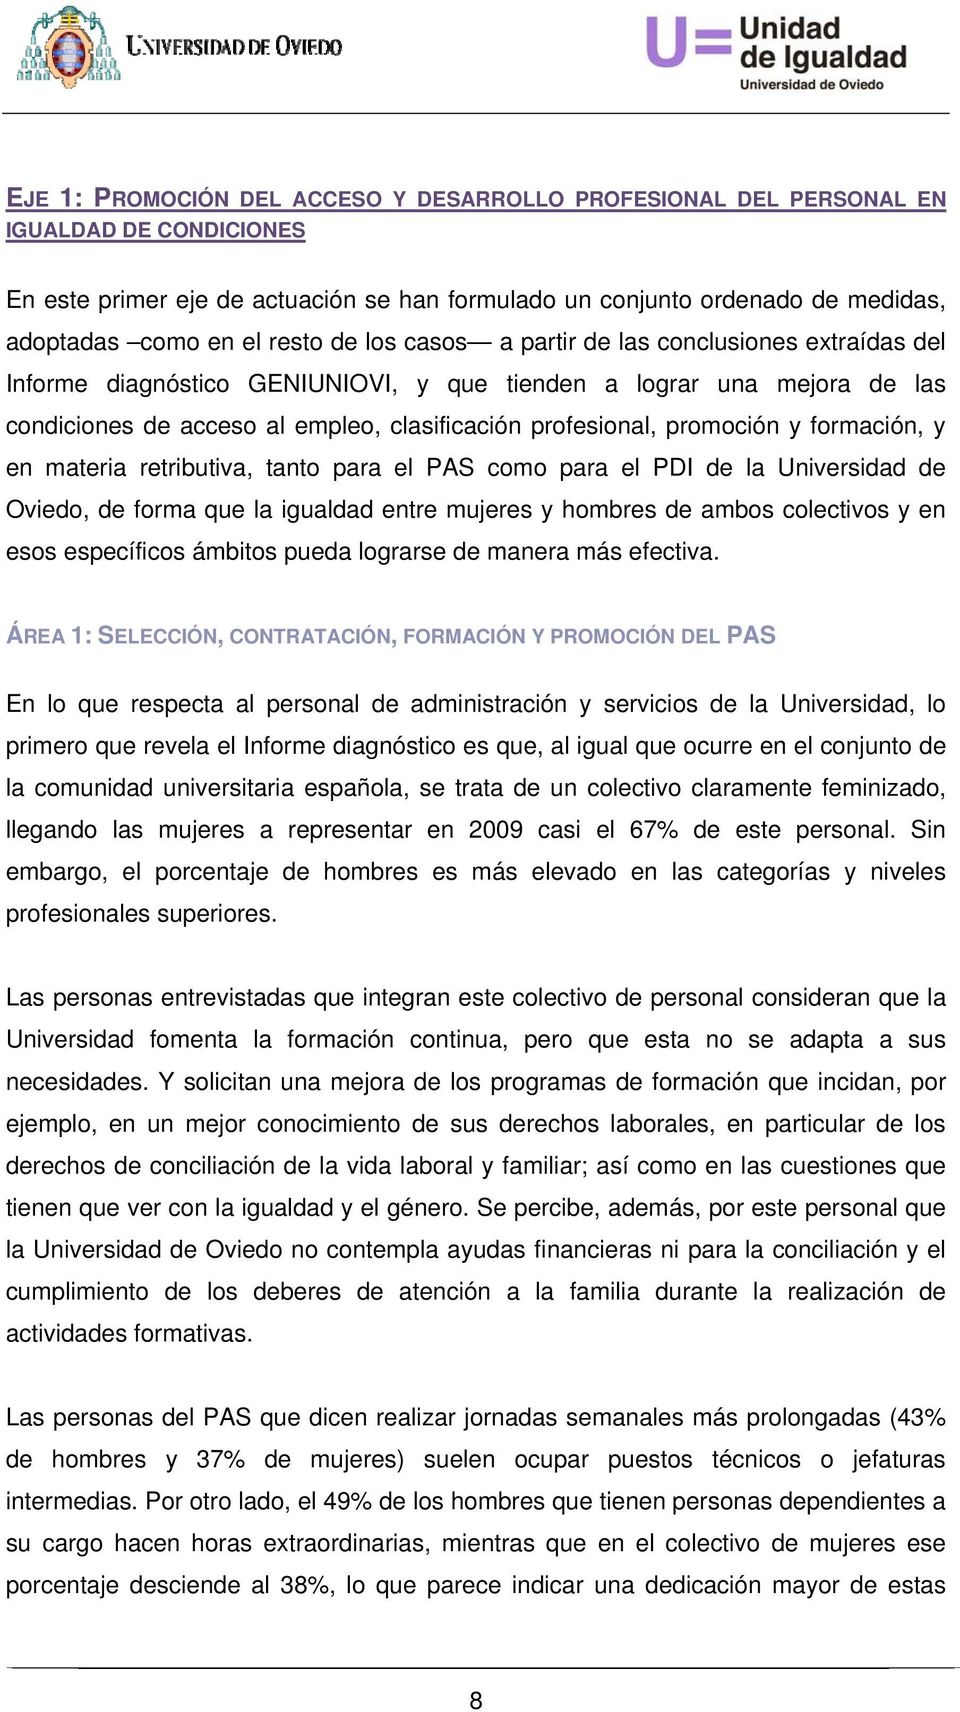 promoción y formación, y en materia retributiva, tanto para el PAS como para el PDI de la Universidad de Oviedo, de forma que la igualdad entre mujeres y hombres de ambos colectivos y en esos